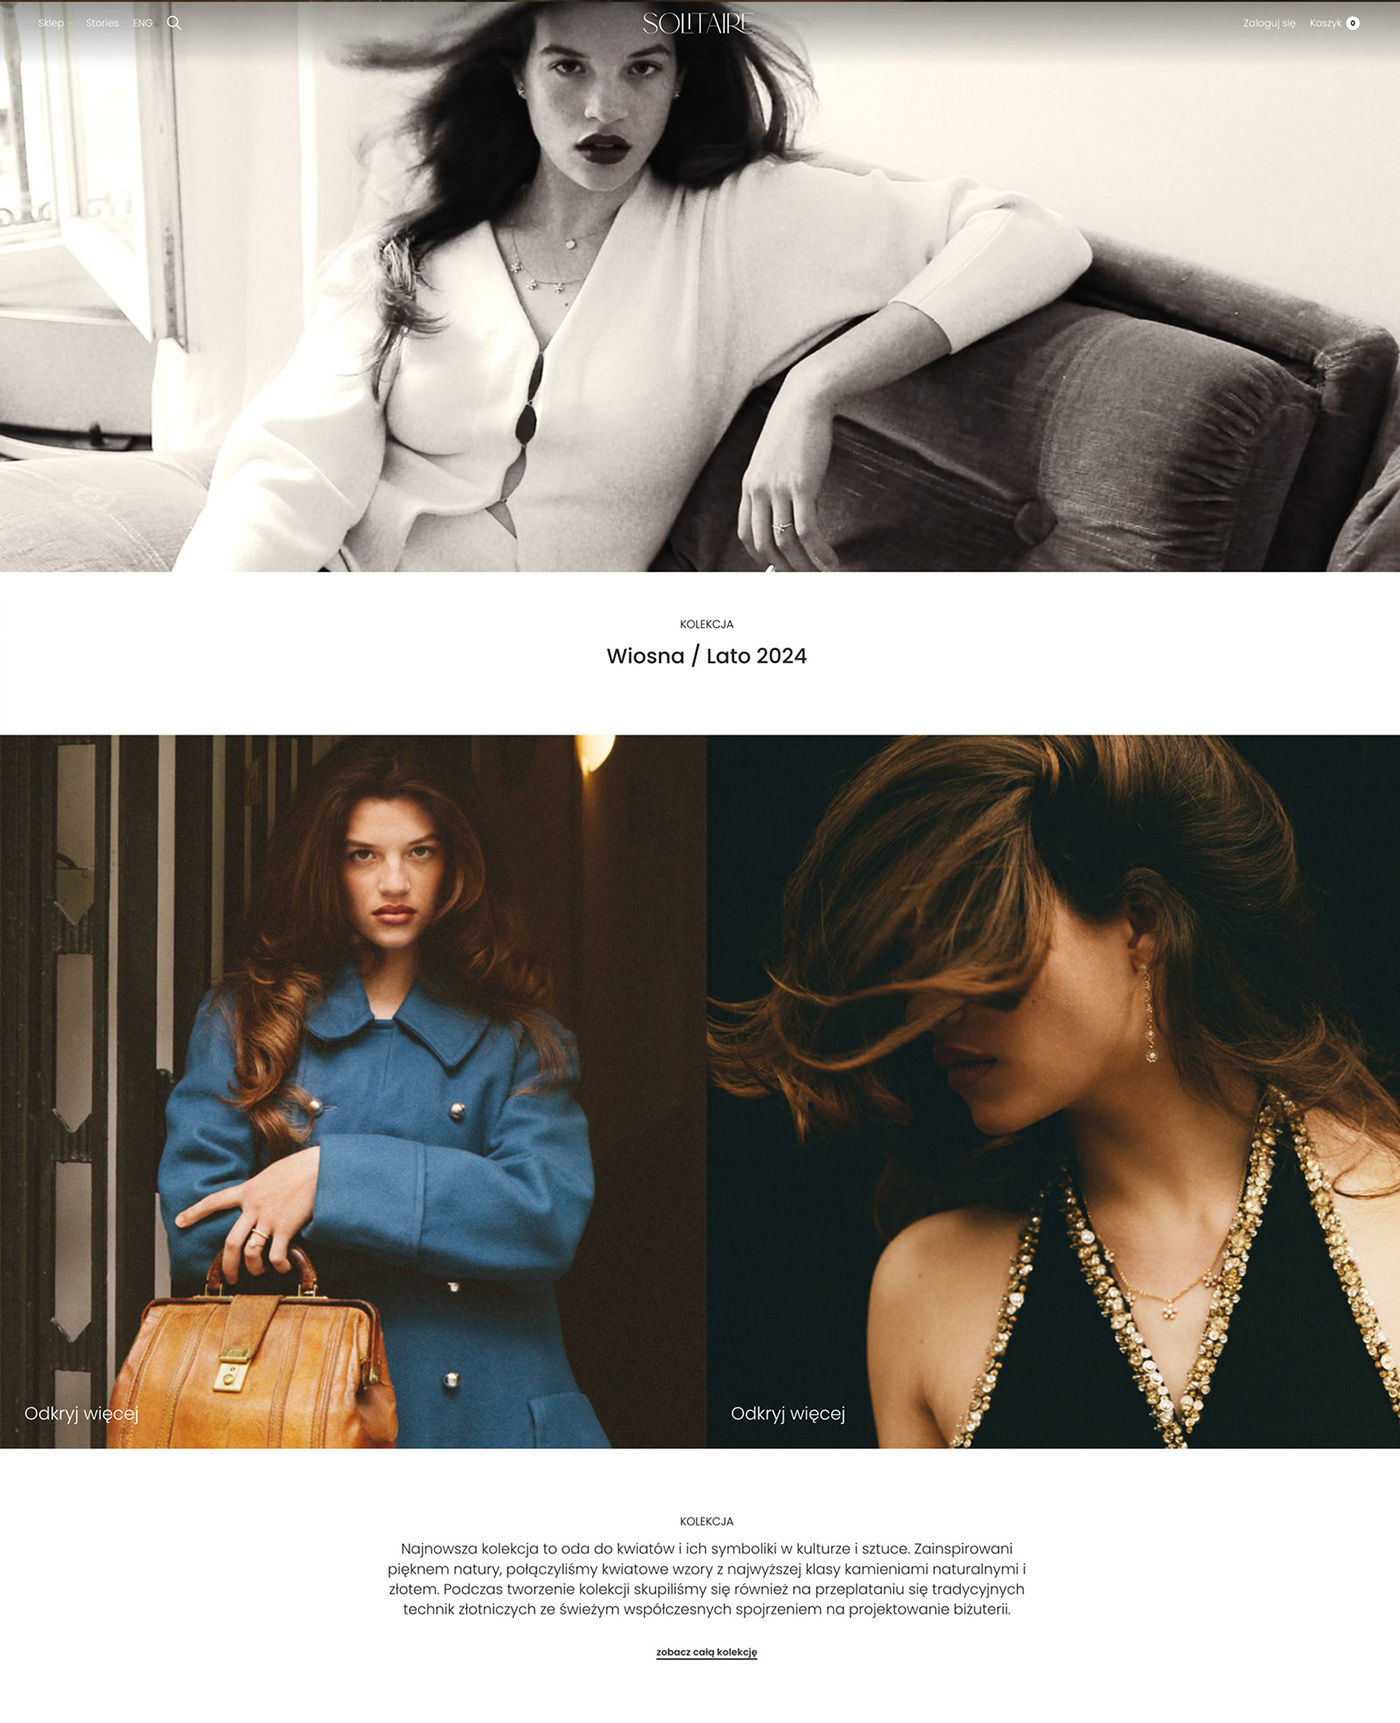 jewels Fashion  Photography  model woman beauty design Web Design  shop Paris